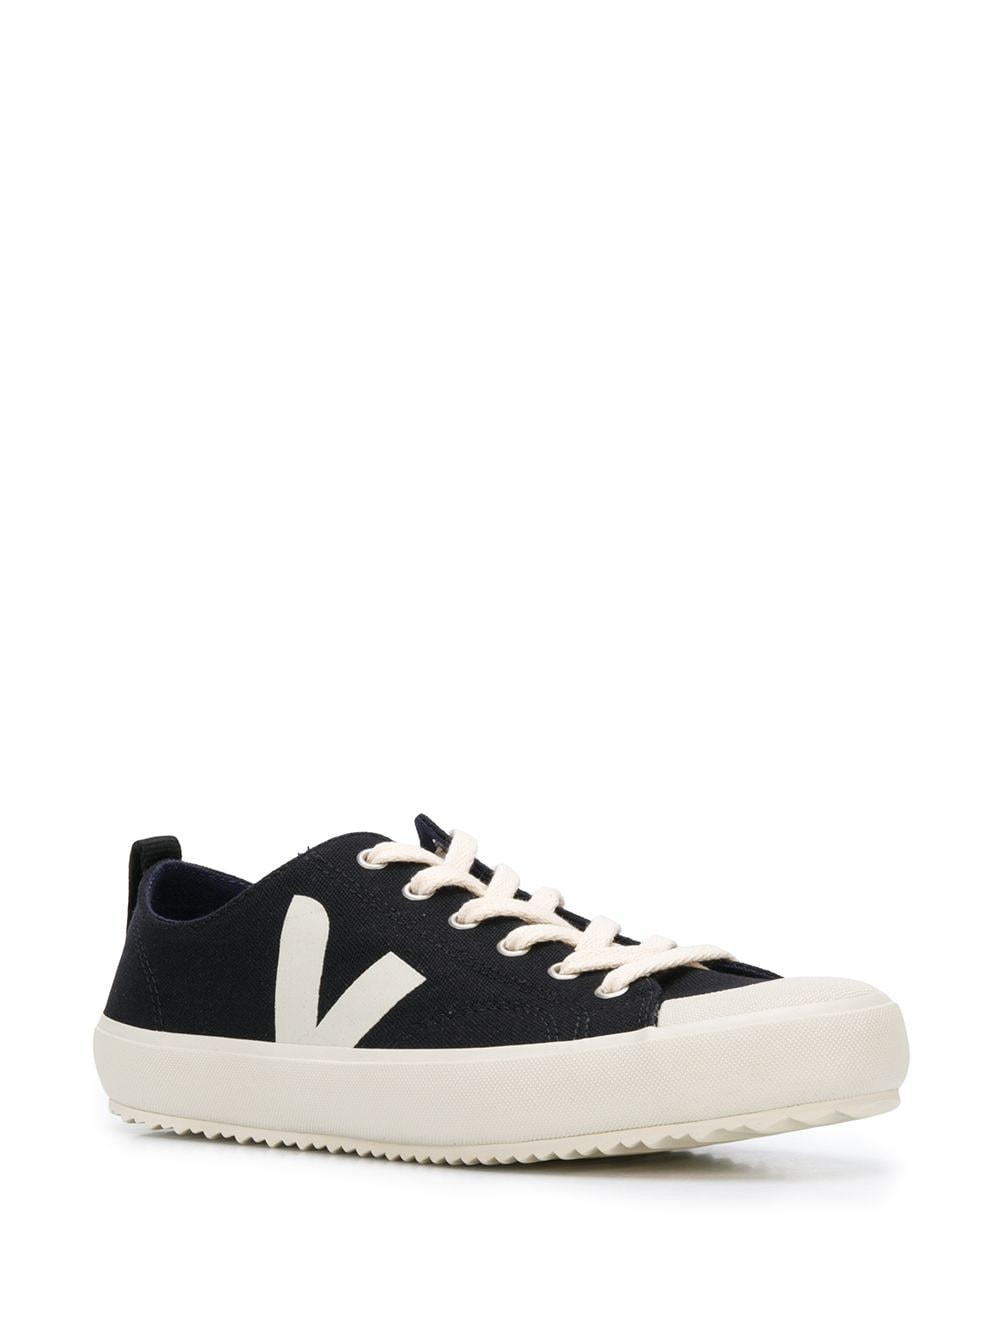 Veja Sneakers Nova  NA011397 BLACKPIERRE - Nuova Collezione Primavera Estate 2021